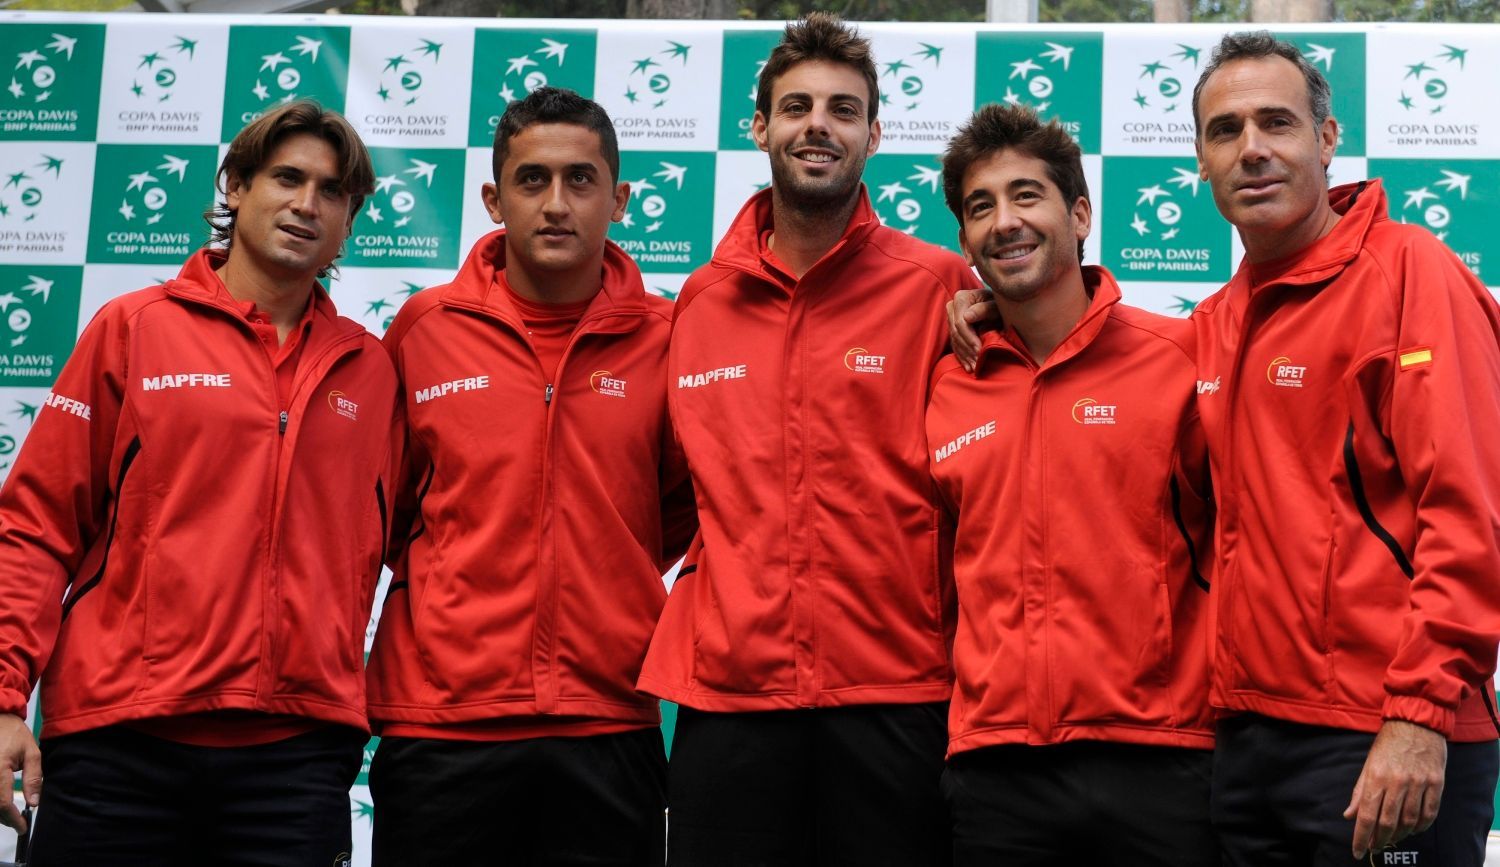 Španělští tenisté David Ferrer, Nicolas Almagro, Marcel Granollers, Marc Lopez a kapitán Alex Corretja během oficiálního losování semifinálových utkání Davis Cupu 2012.